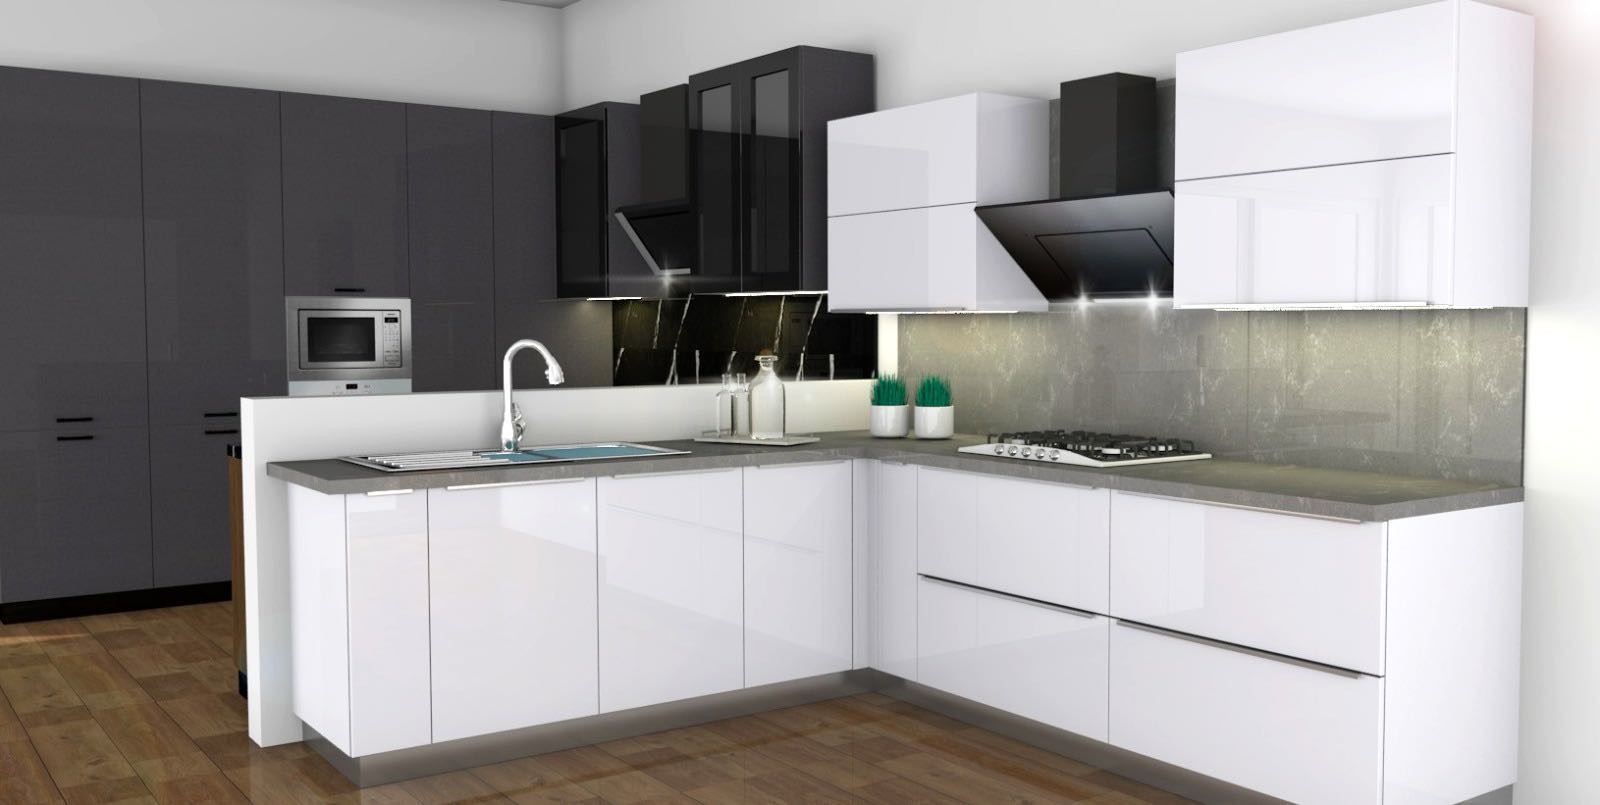 820 Super Matte Kitchen ideas  kitchen design, modern kitchen, kitchen  inspirations